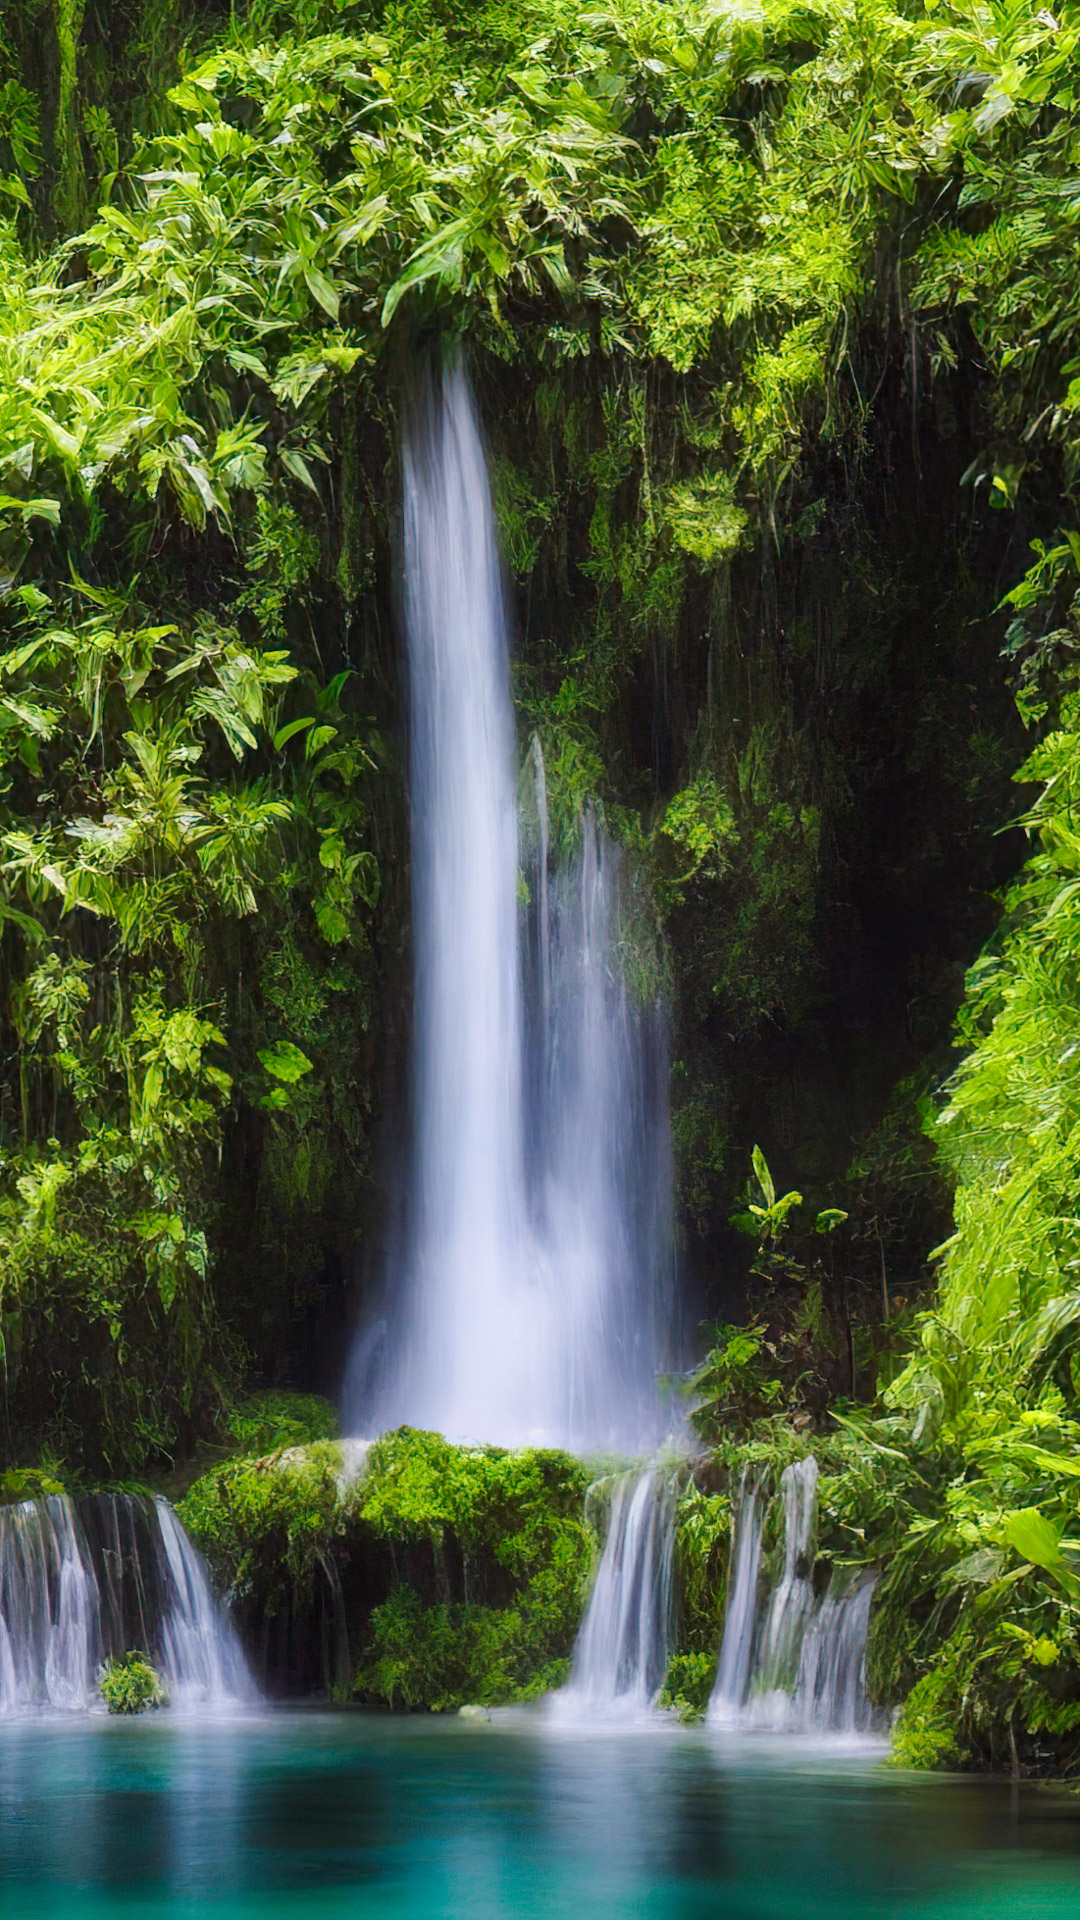 Faites l'expérience de notre fond d'écran de paysages en haute résolution, présentant une cascade enchanteresse cachée au plus profond de la forêt tropicale verdoyante.